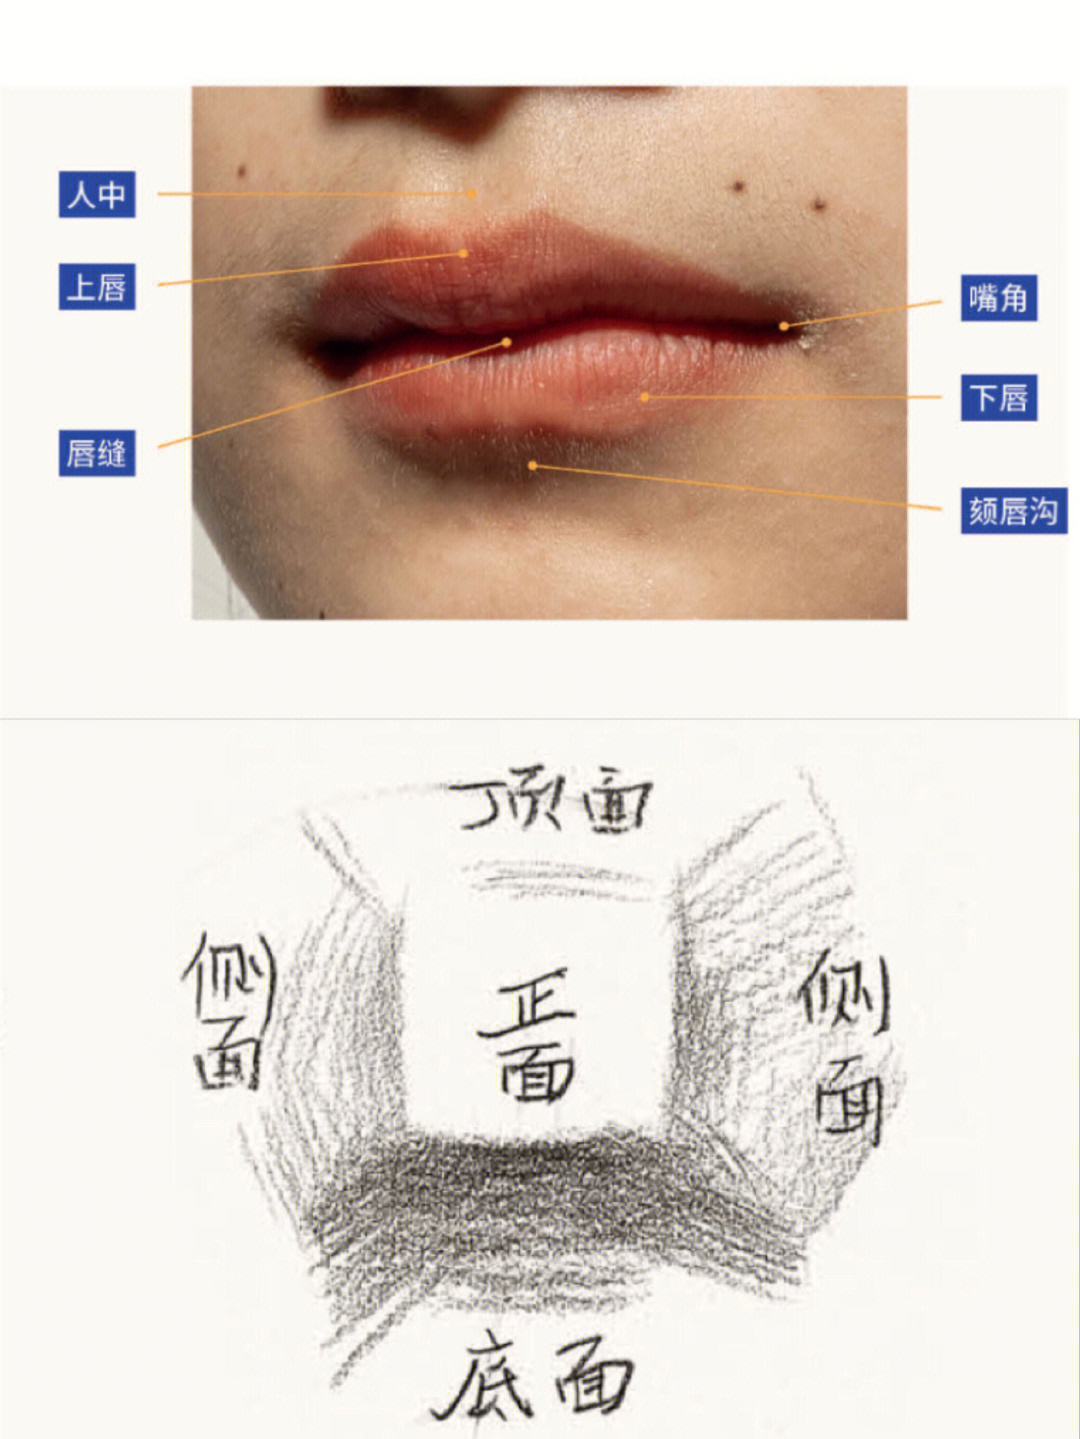 嘴唇的结构图图片